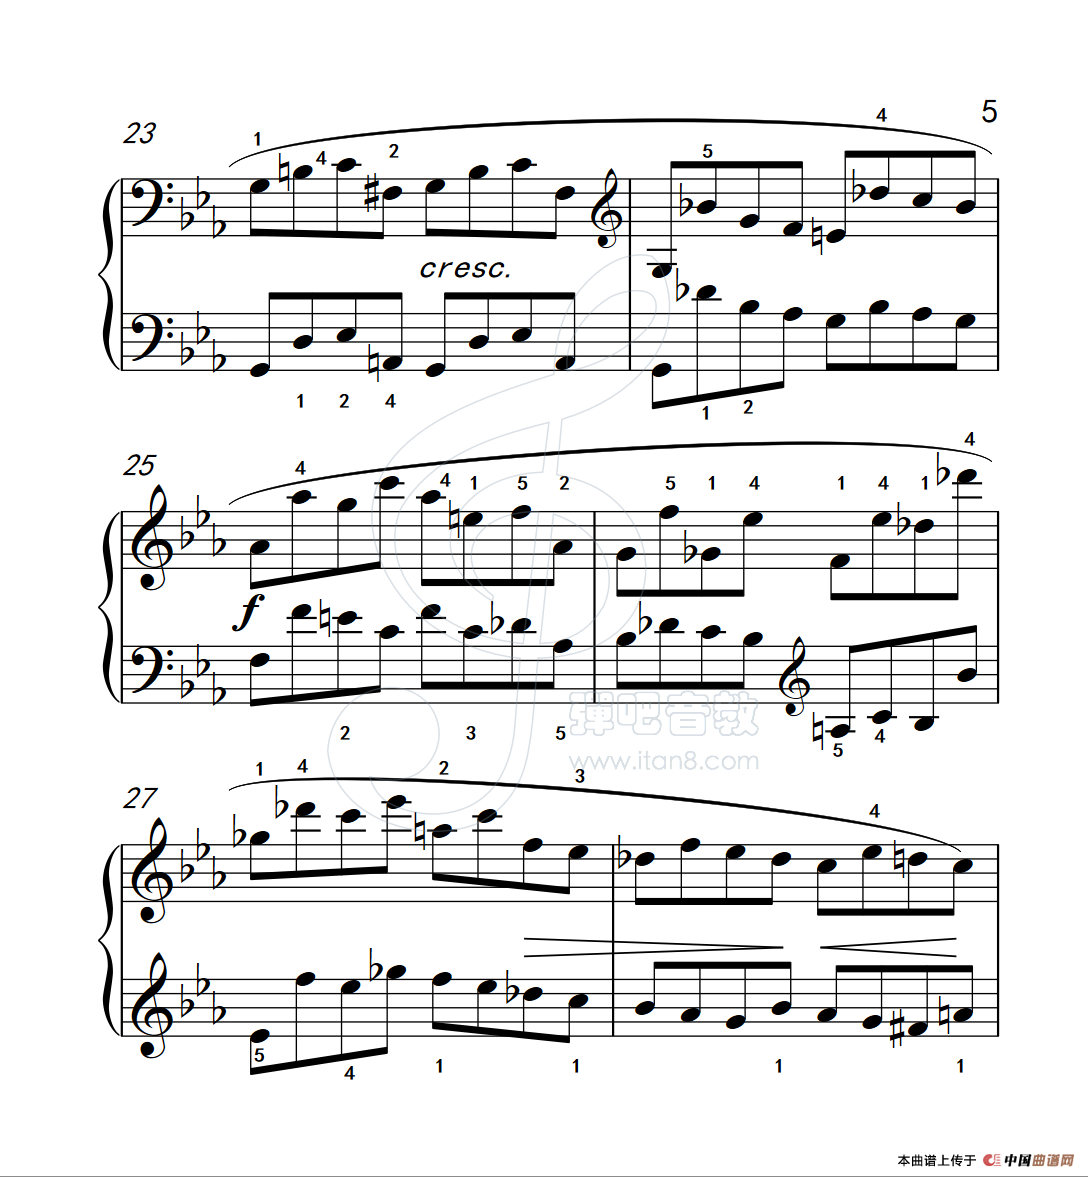 《练习曲 27》钢琴曲谱图分享